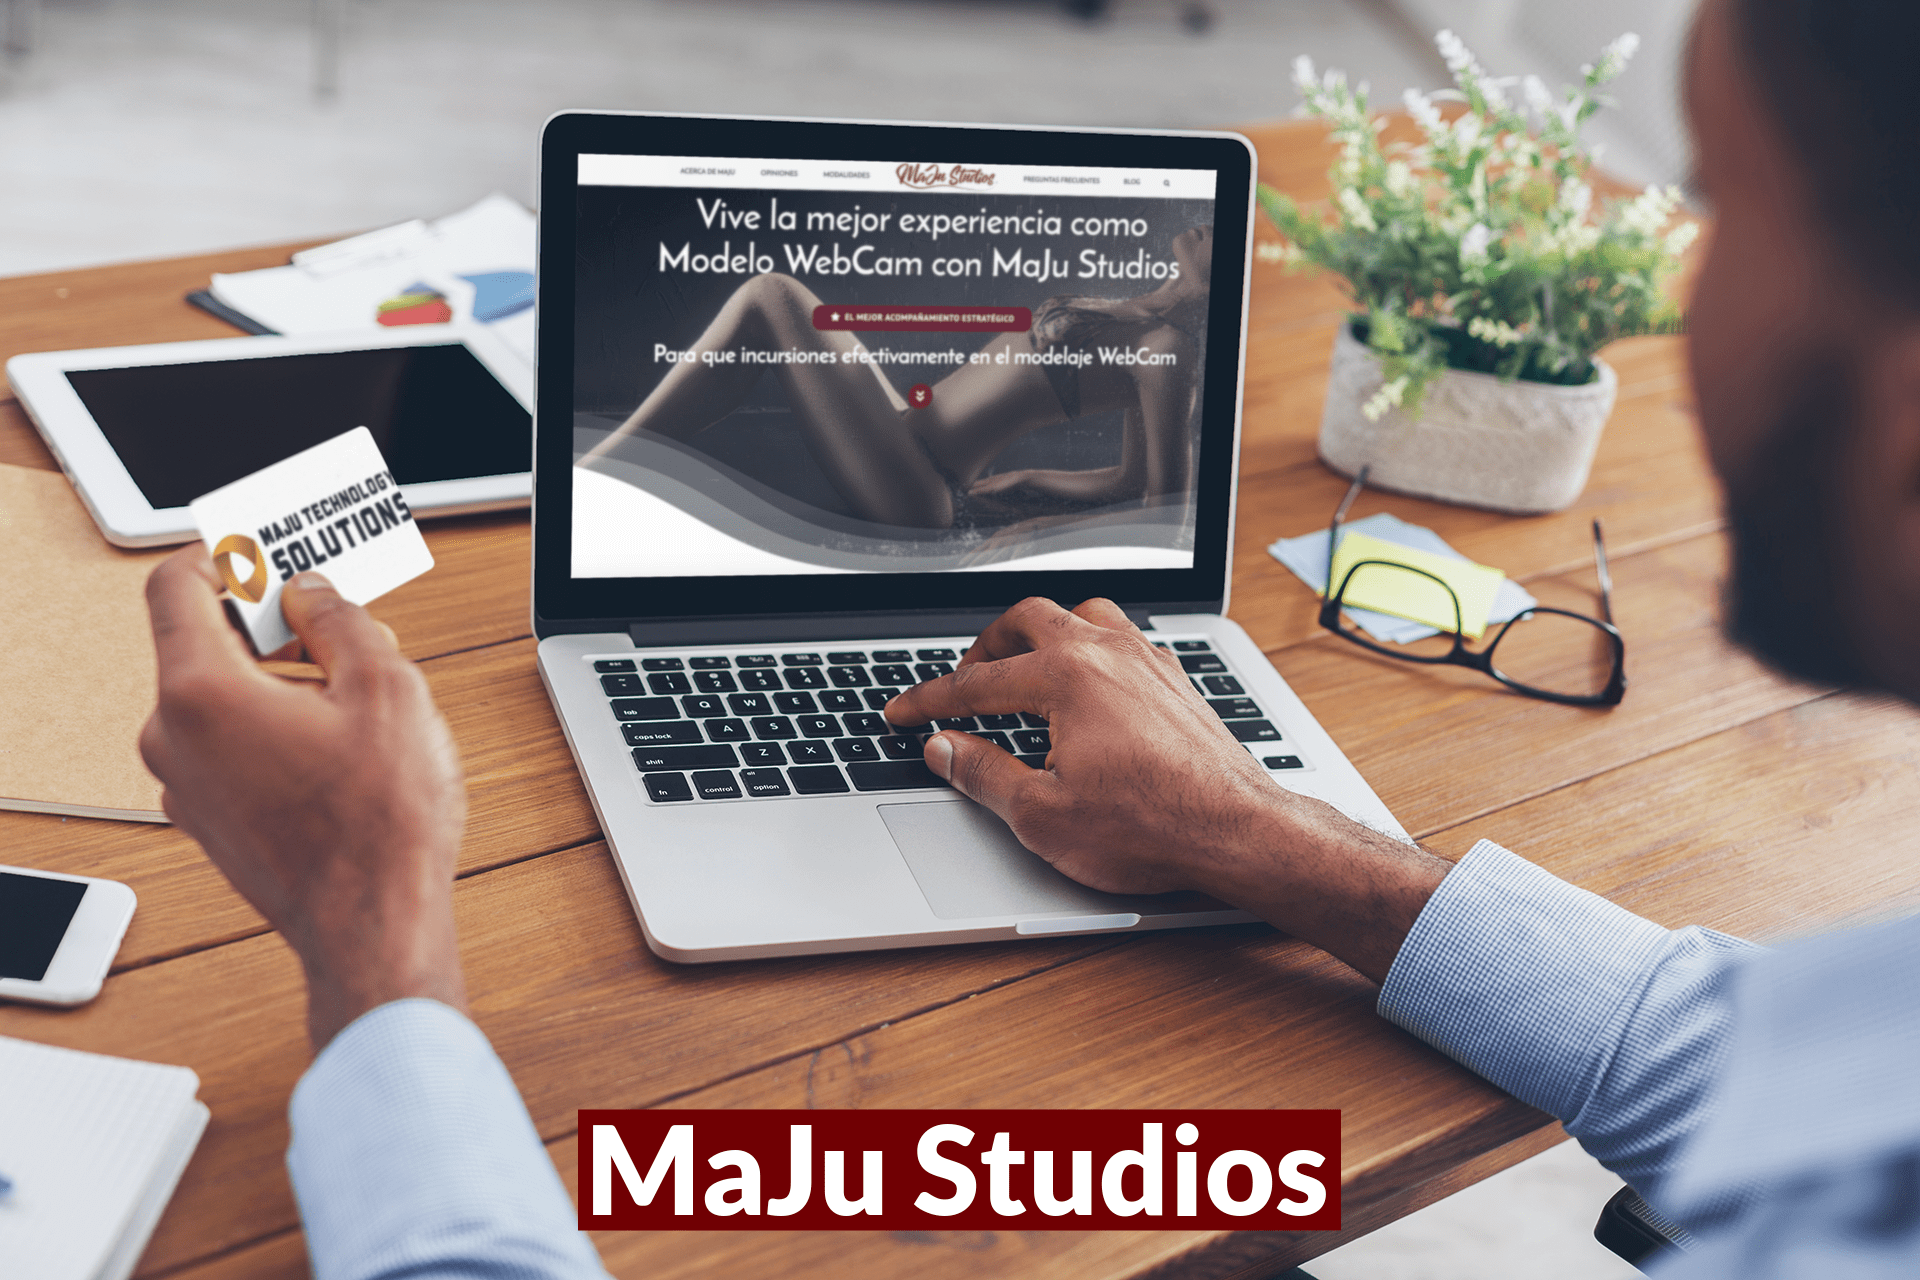 MaJu Studios - Modelos Webcam Manizales